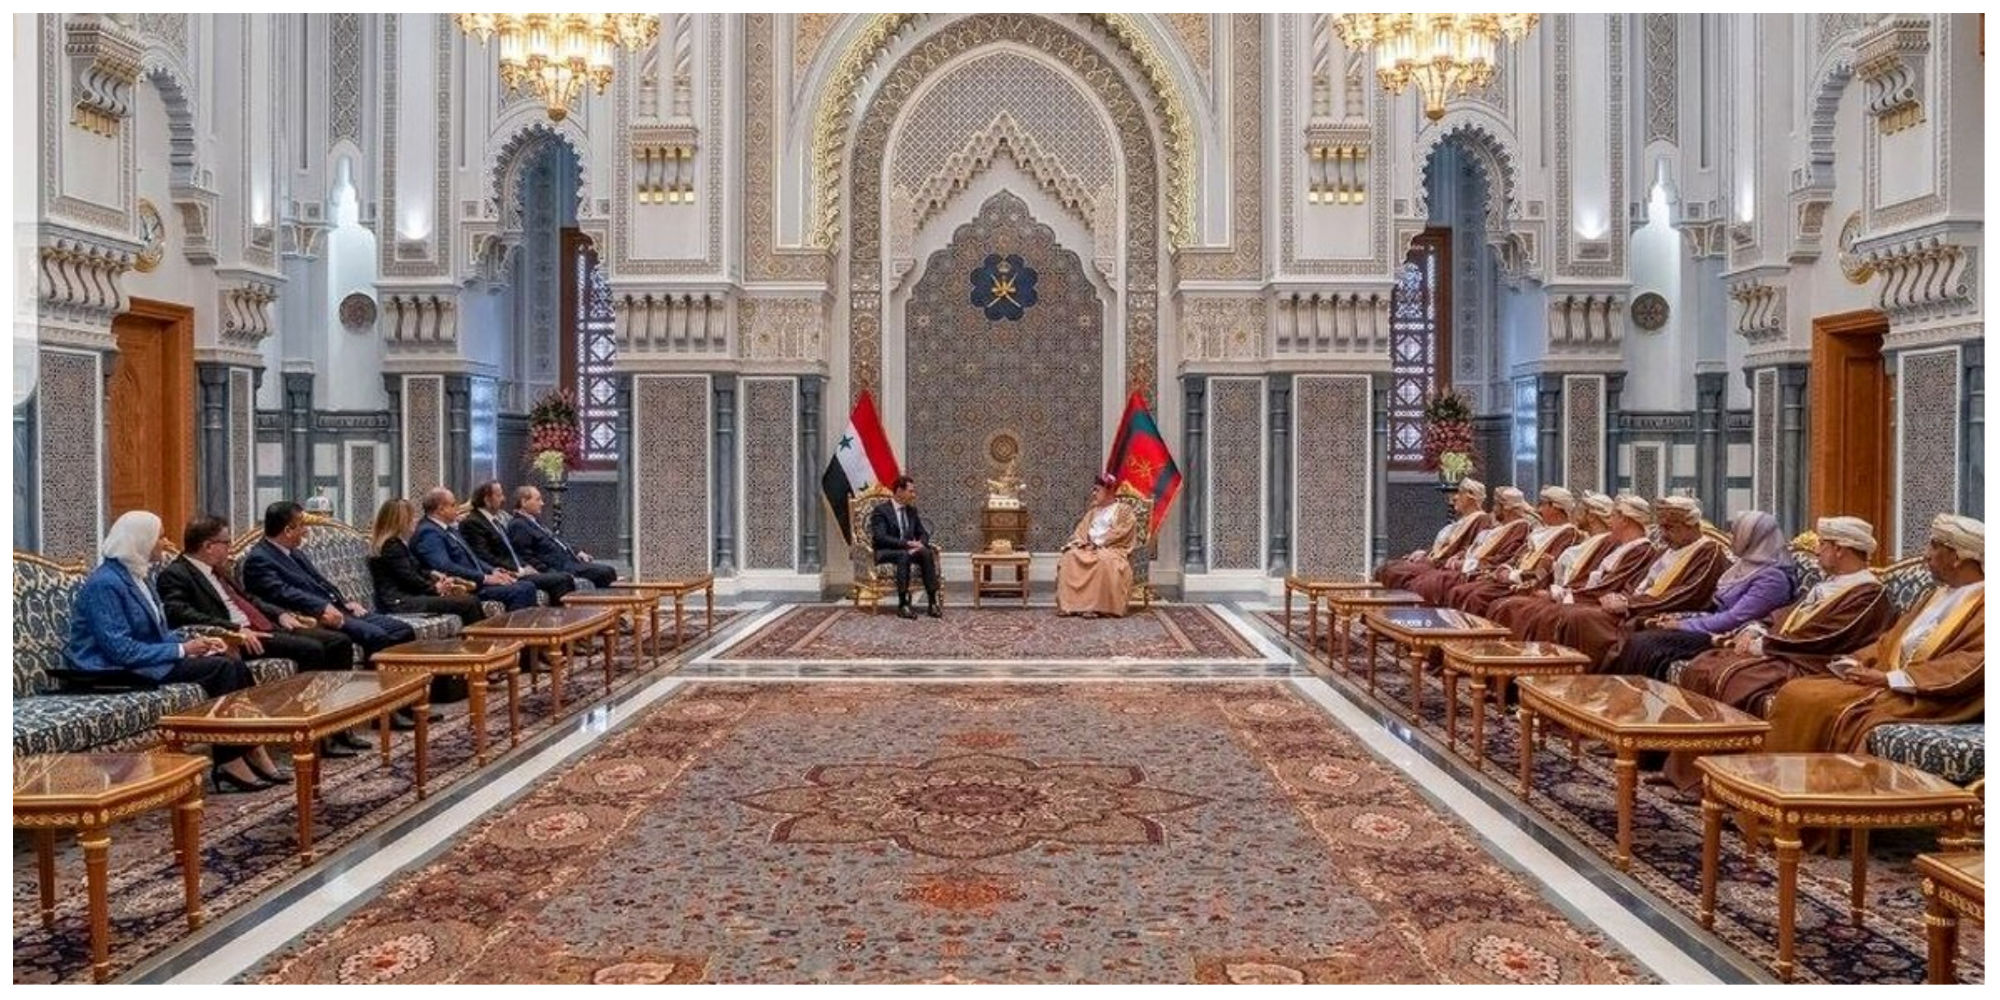 تصویری دیدنی از کاخ پادشاه عمان با تزئینات ایرانی